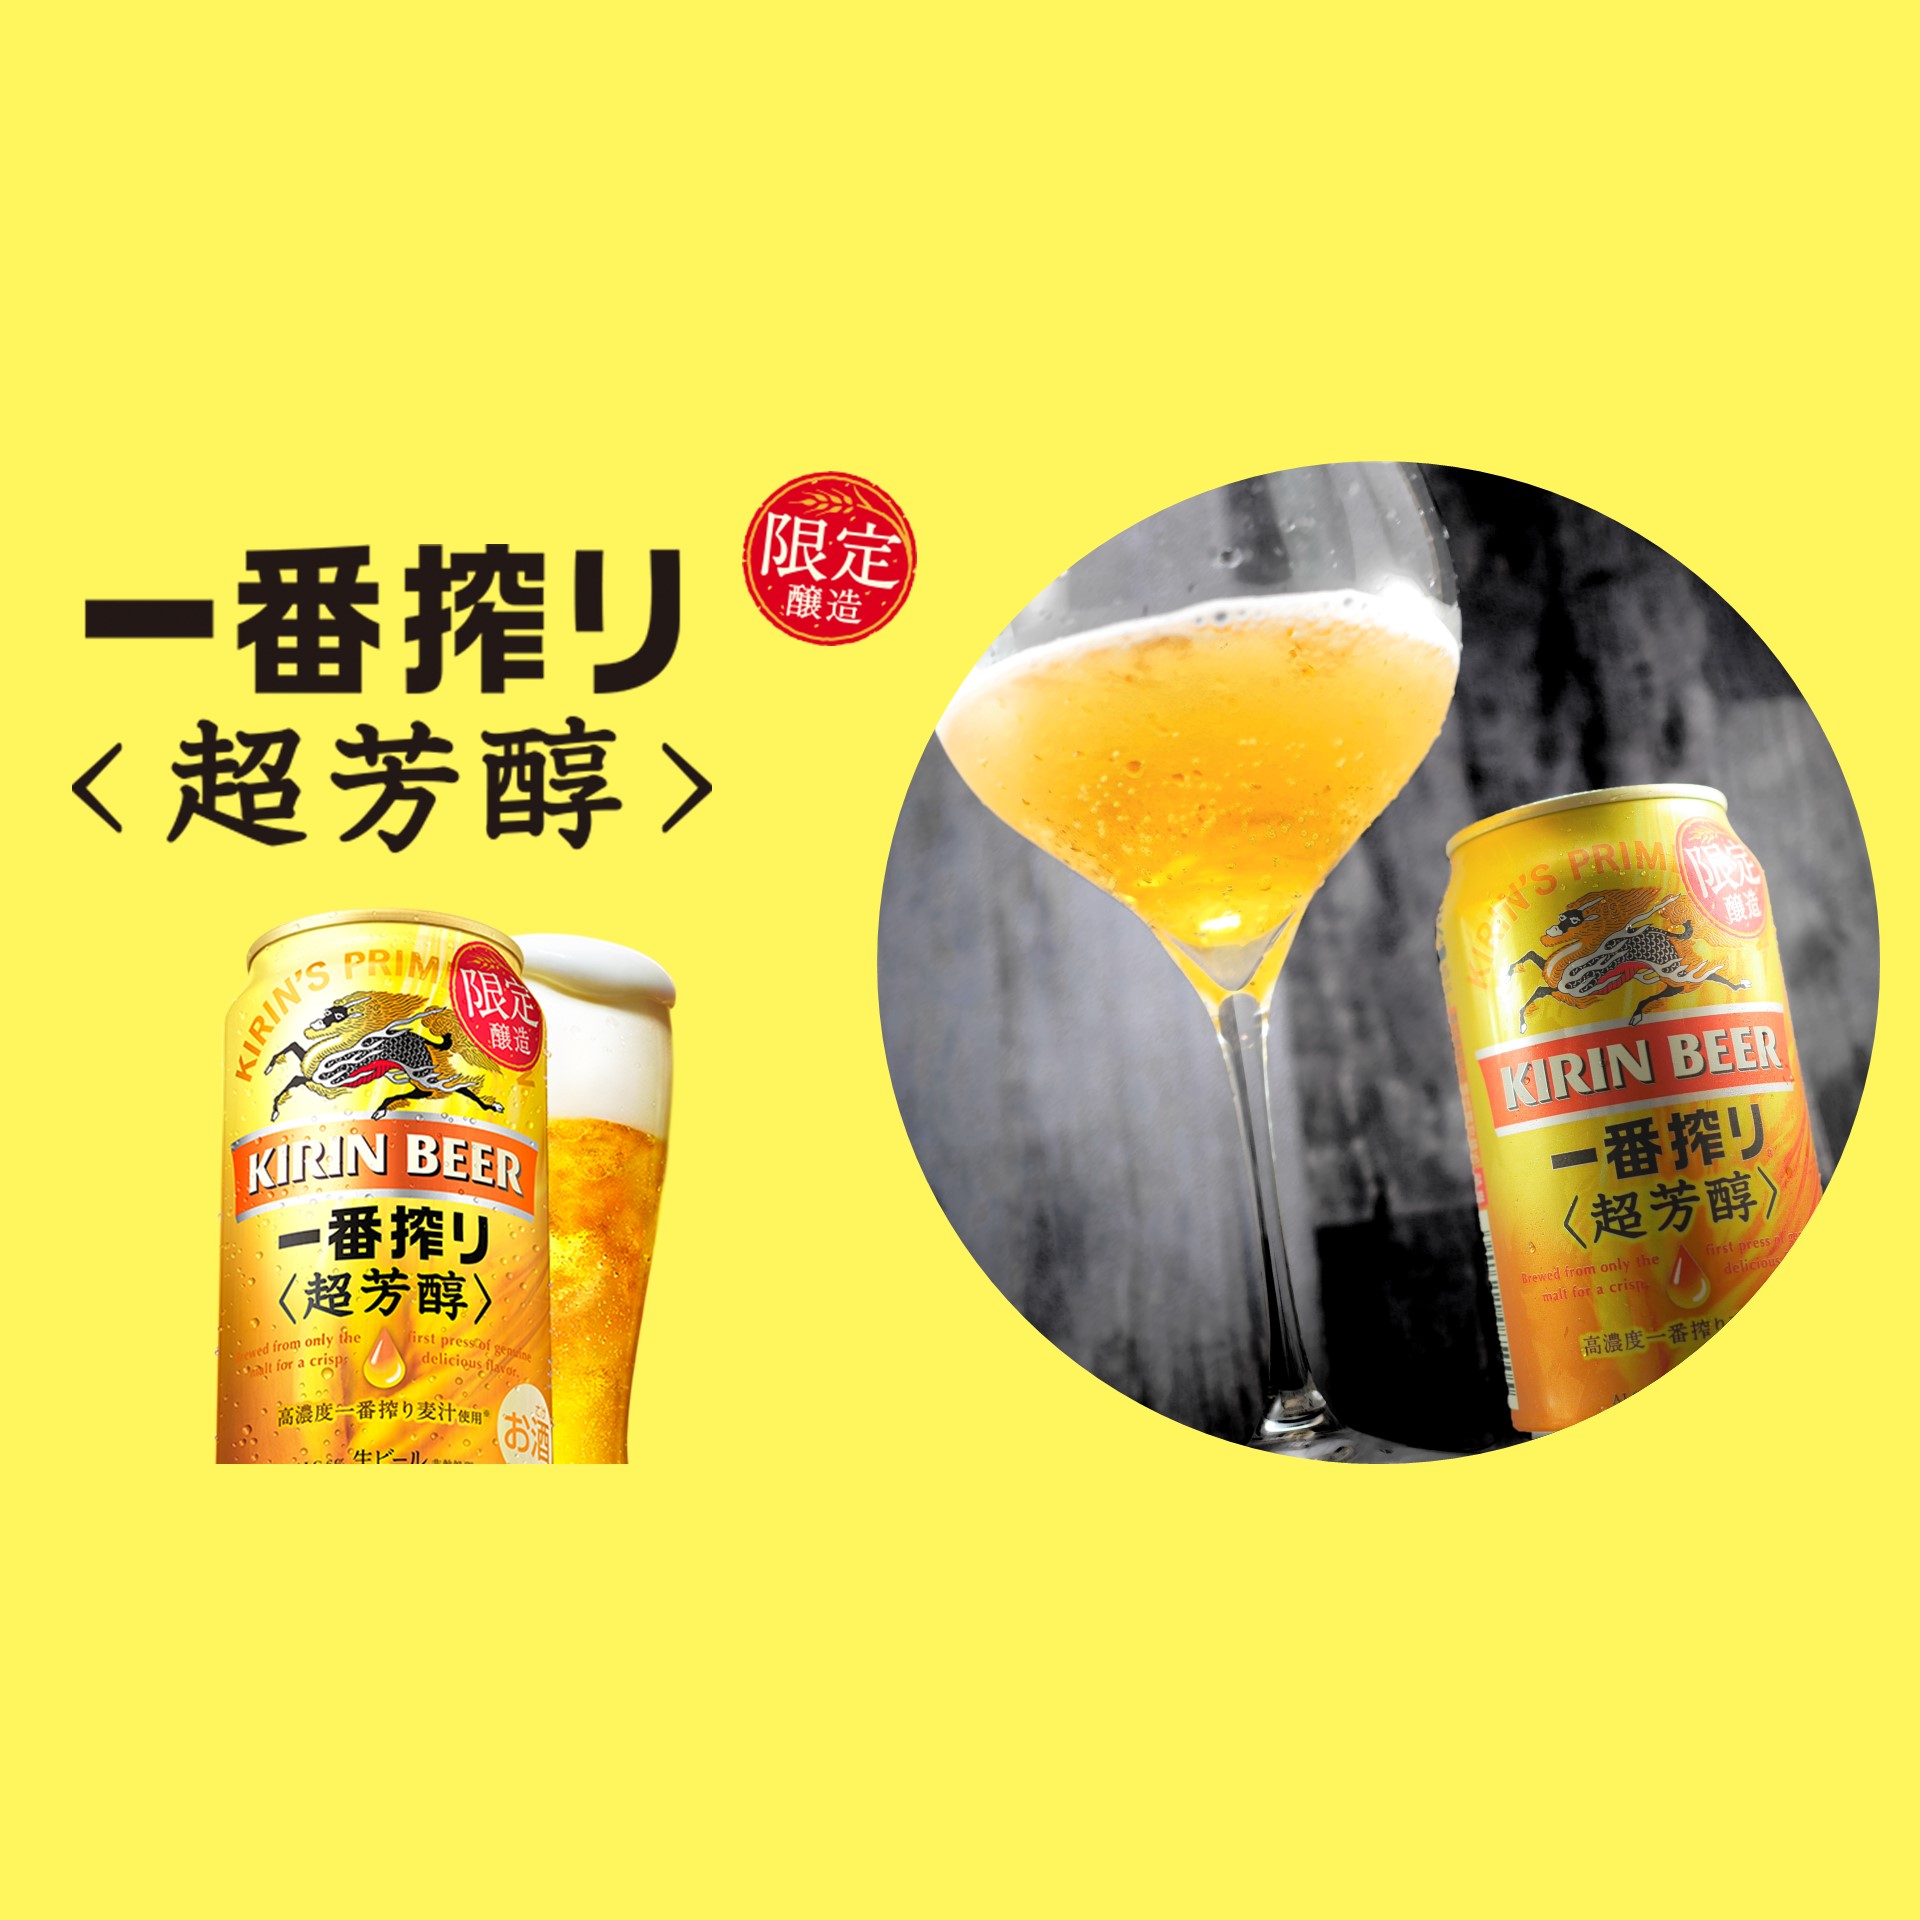 キリン一番搾り 超芳醇」の詳細情報 | BEER PRESS JAPAN